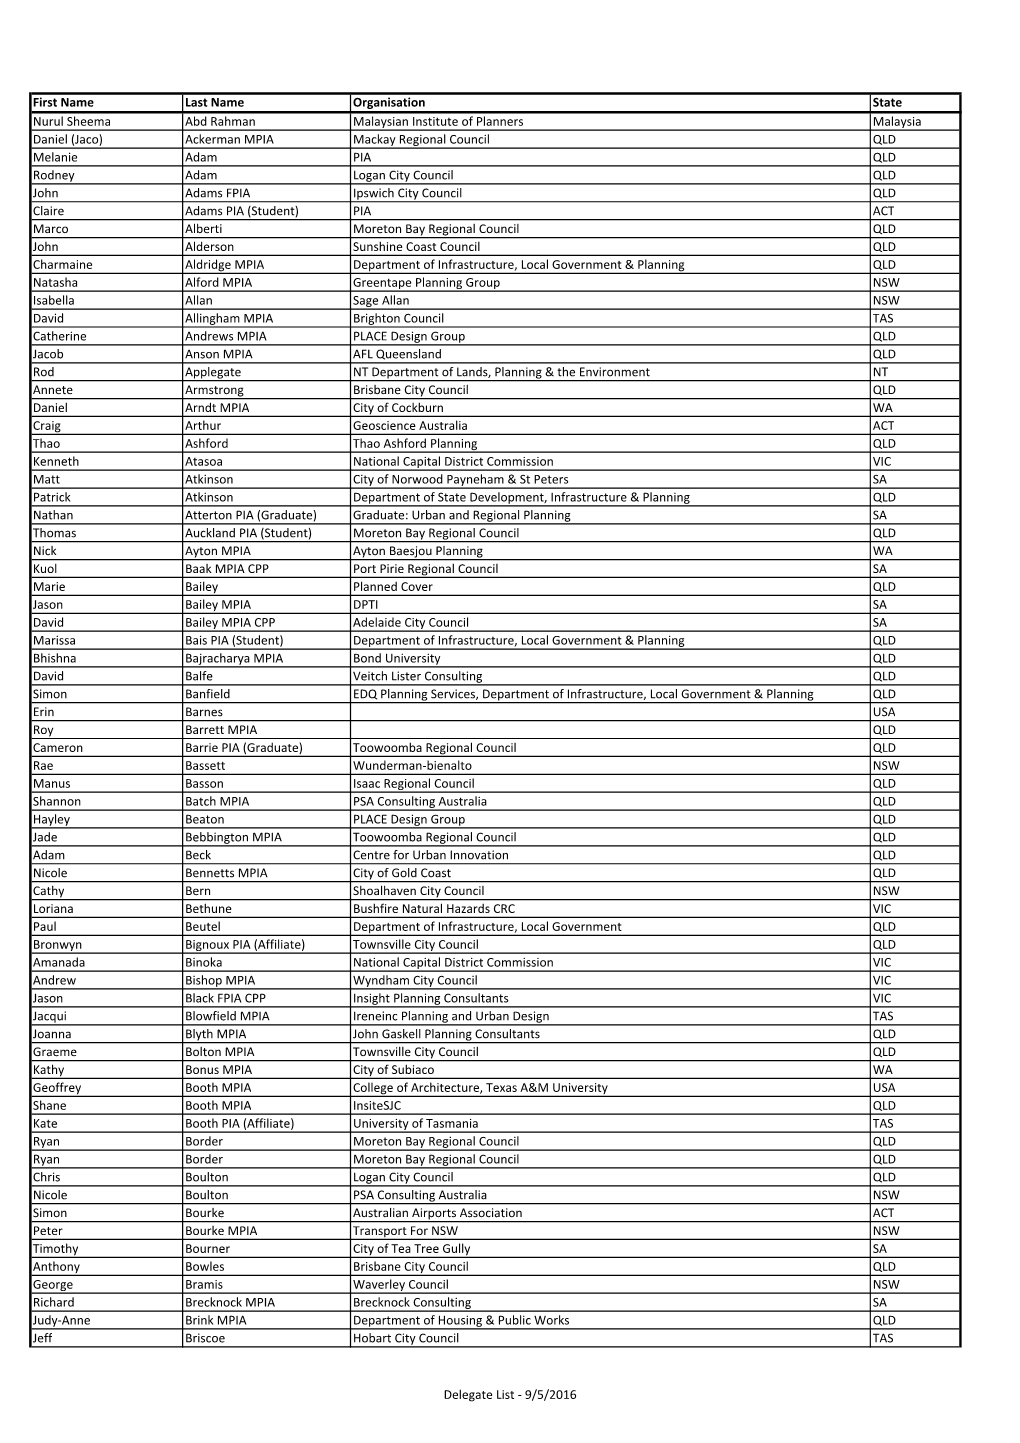 Delegate List for Delegates